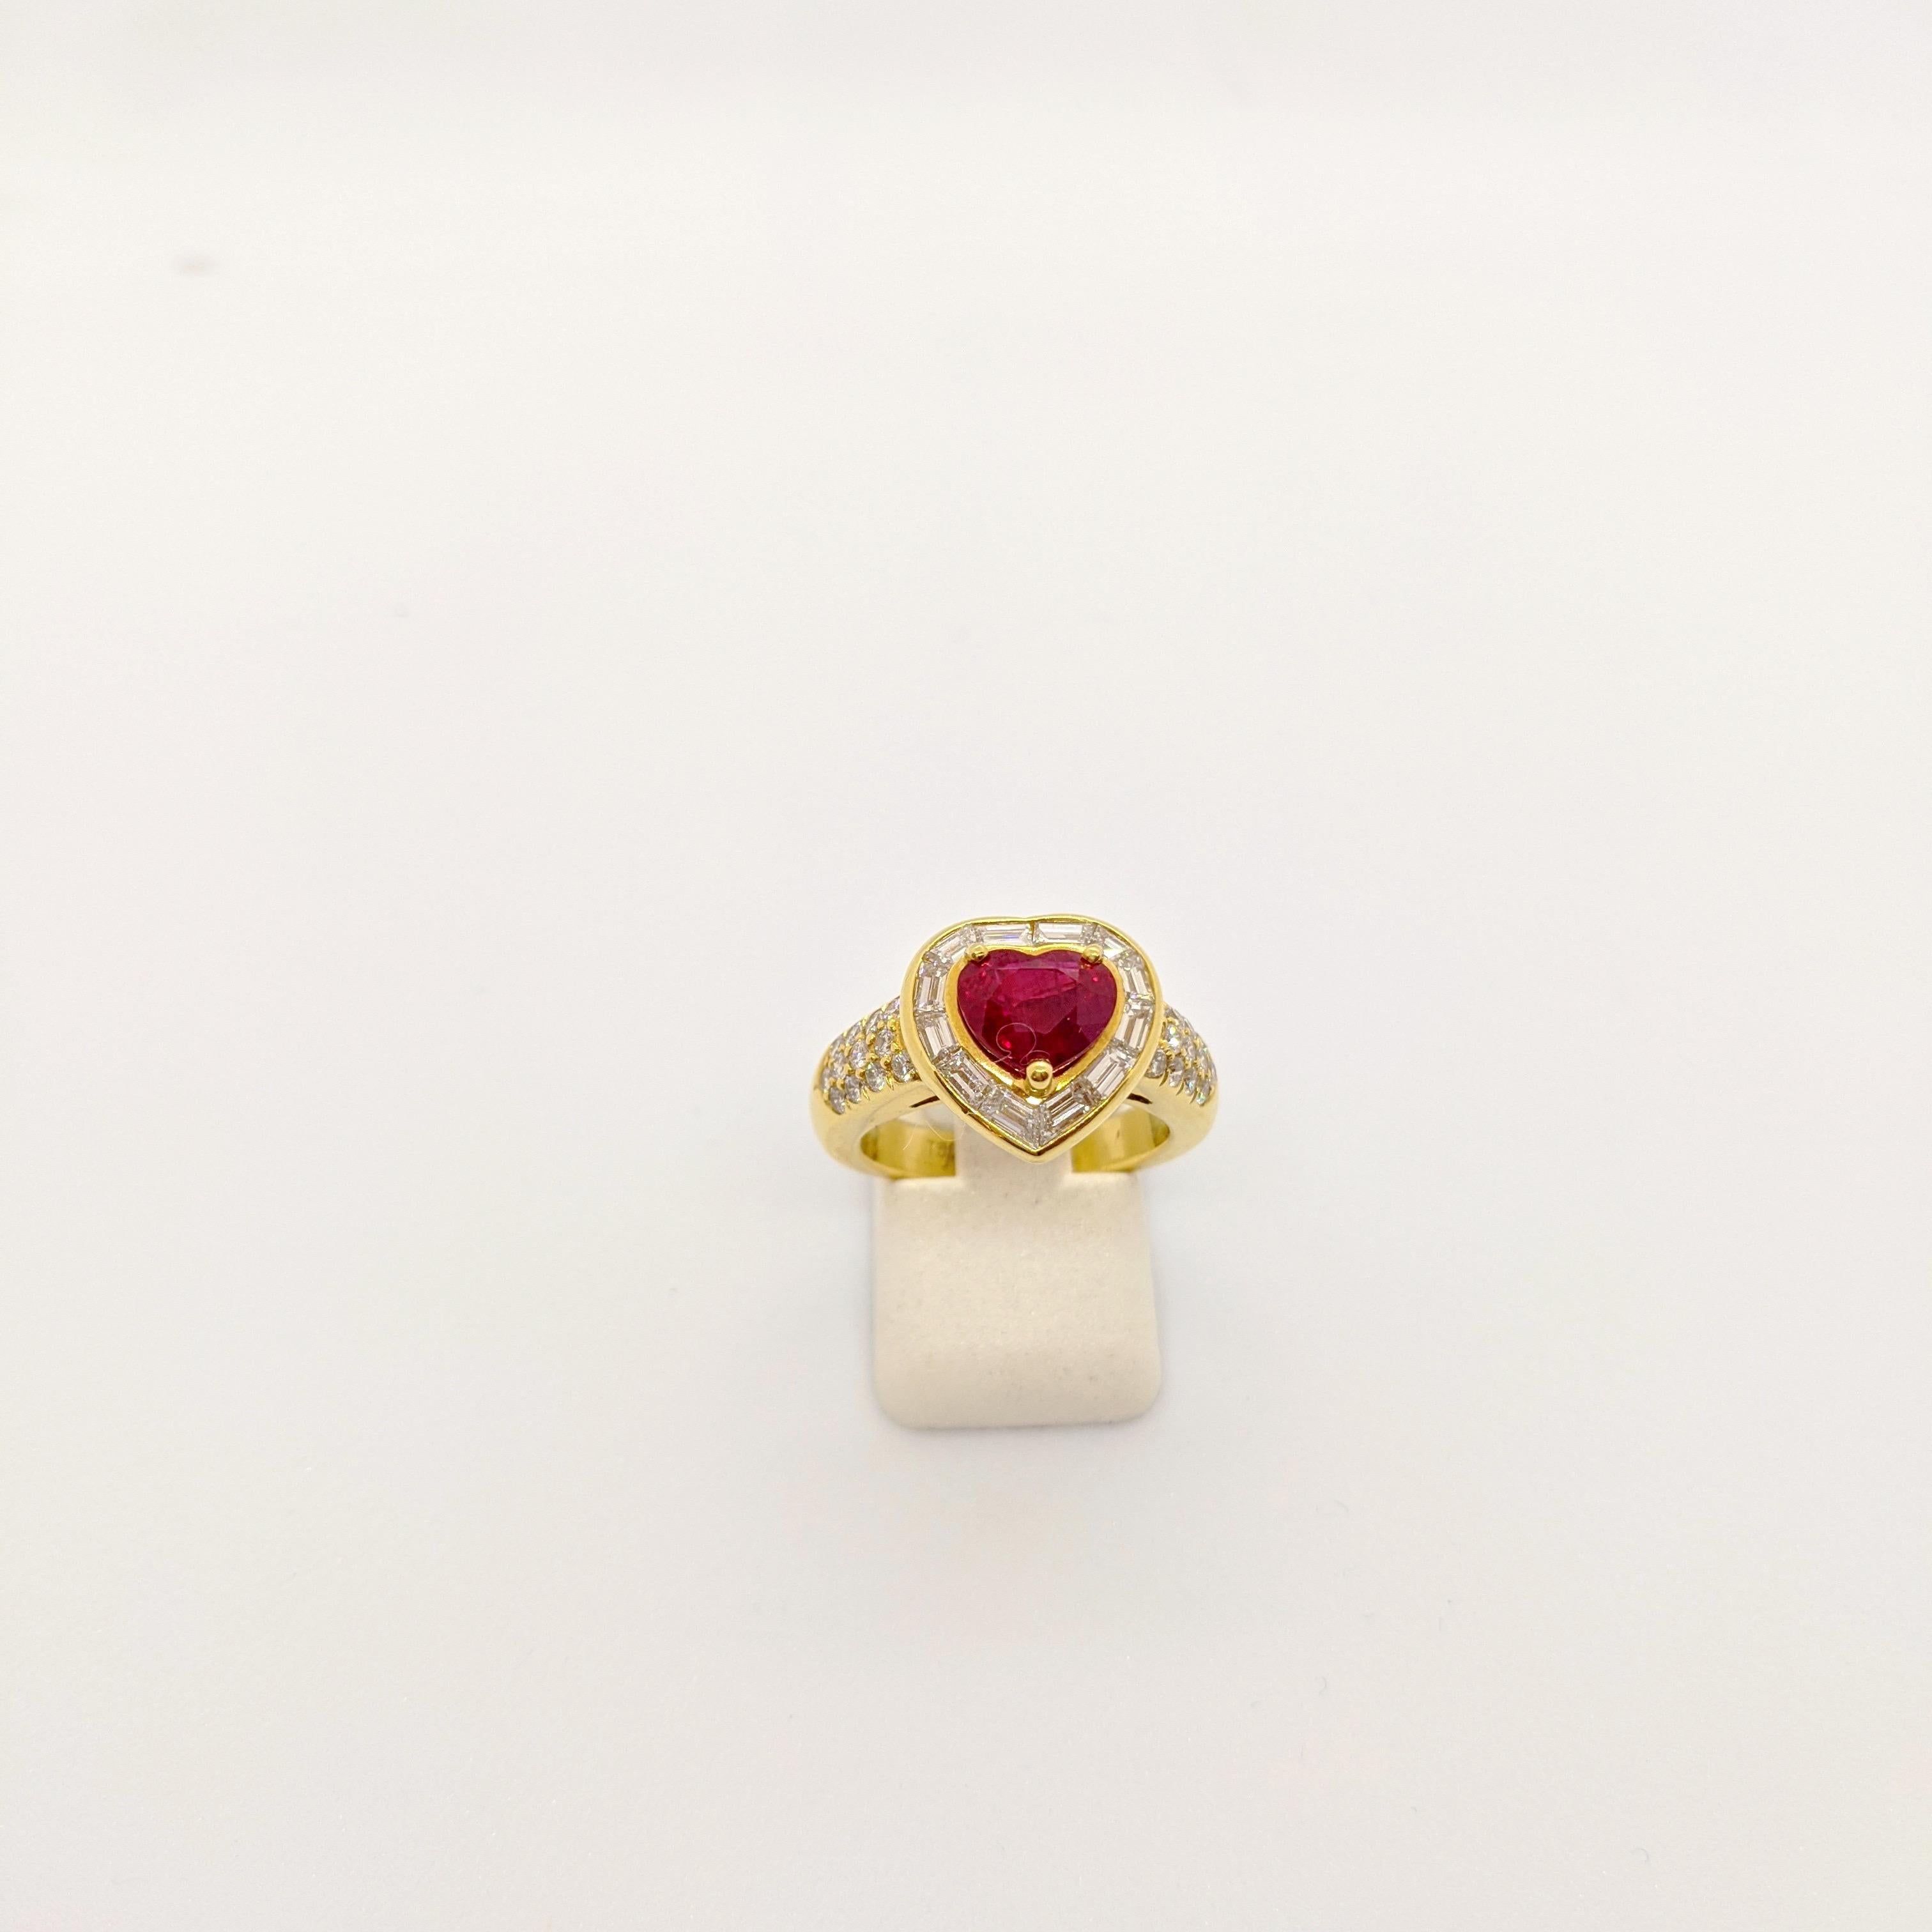 Cellini Jewelers NYC fertigte diesen wunderschönen, einzigartigen Ring an, in dessen Zentrum ein 2,09 natürlicher Rubin steht, der von 0,78 Karat Diamanten im Baguetteschliff umgeben ist. Der obere Teil des Schafts ist mit runden Diamanten von 0,39